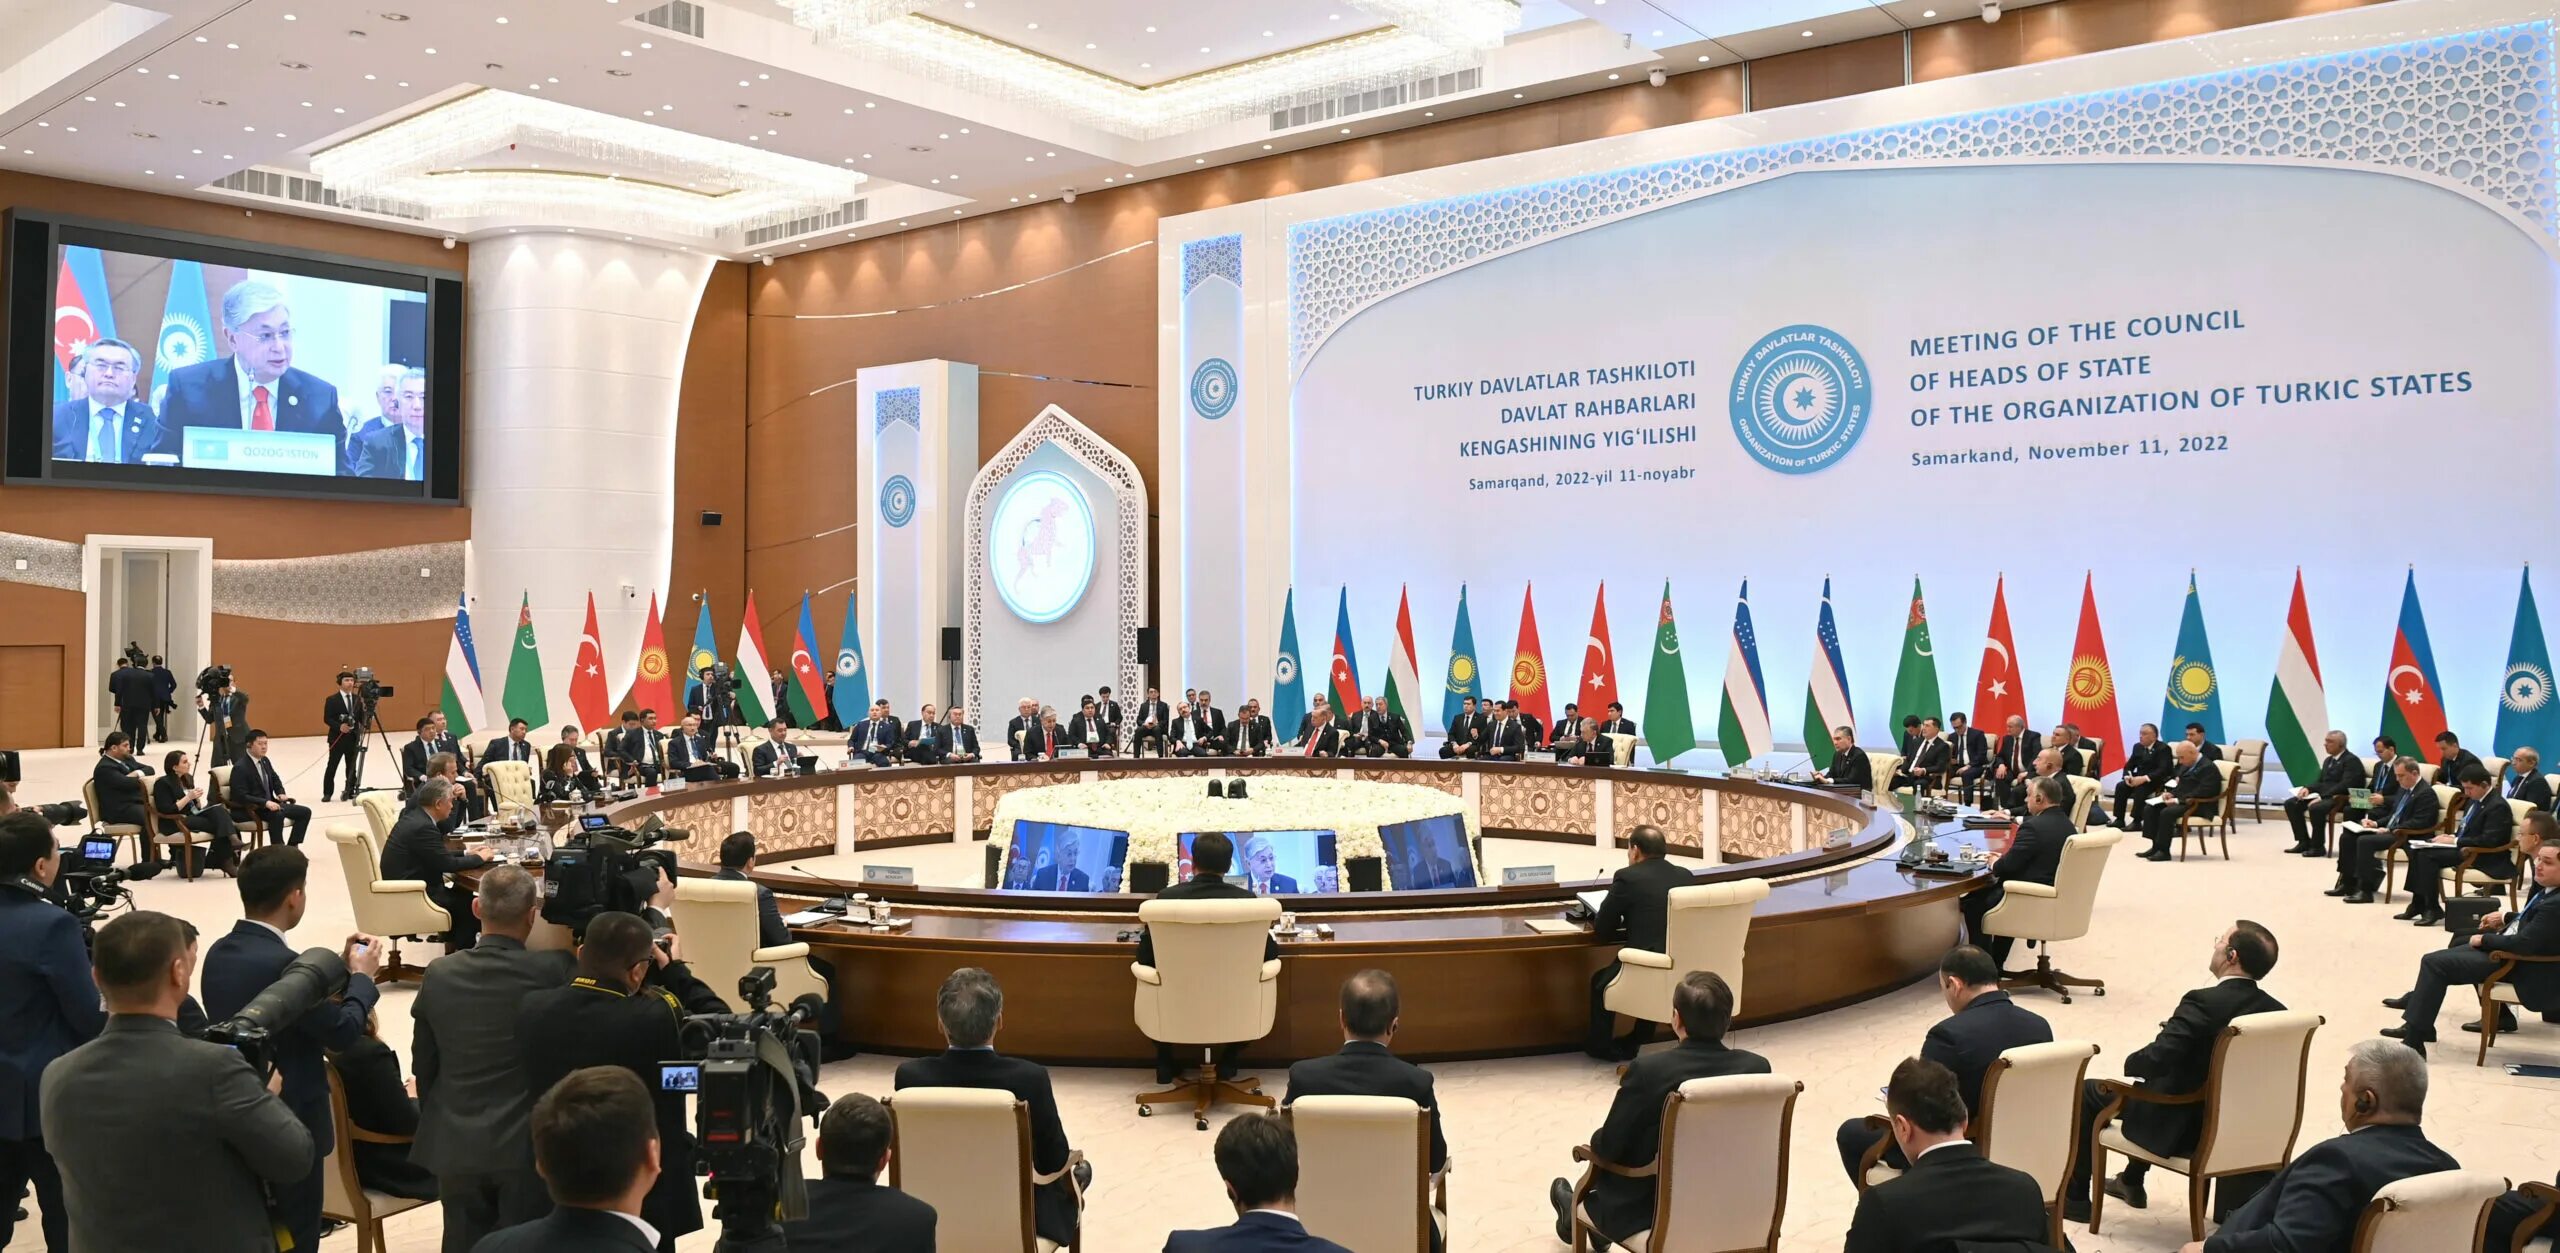 Саммит 2022. Саммит тюркских государств 2022. Саммит ШОС 2023. Организация тюркских государств 2022. Саммит организации тюркских государств.